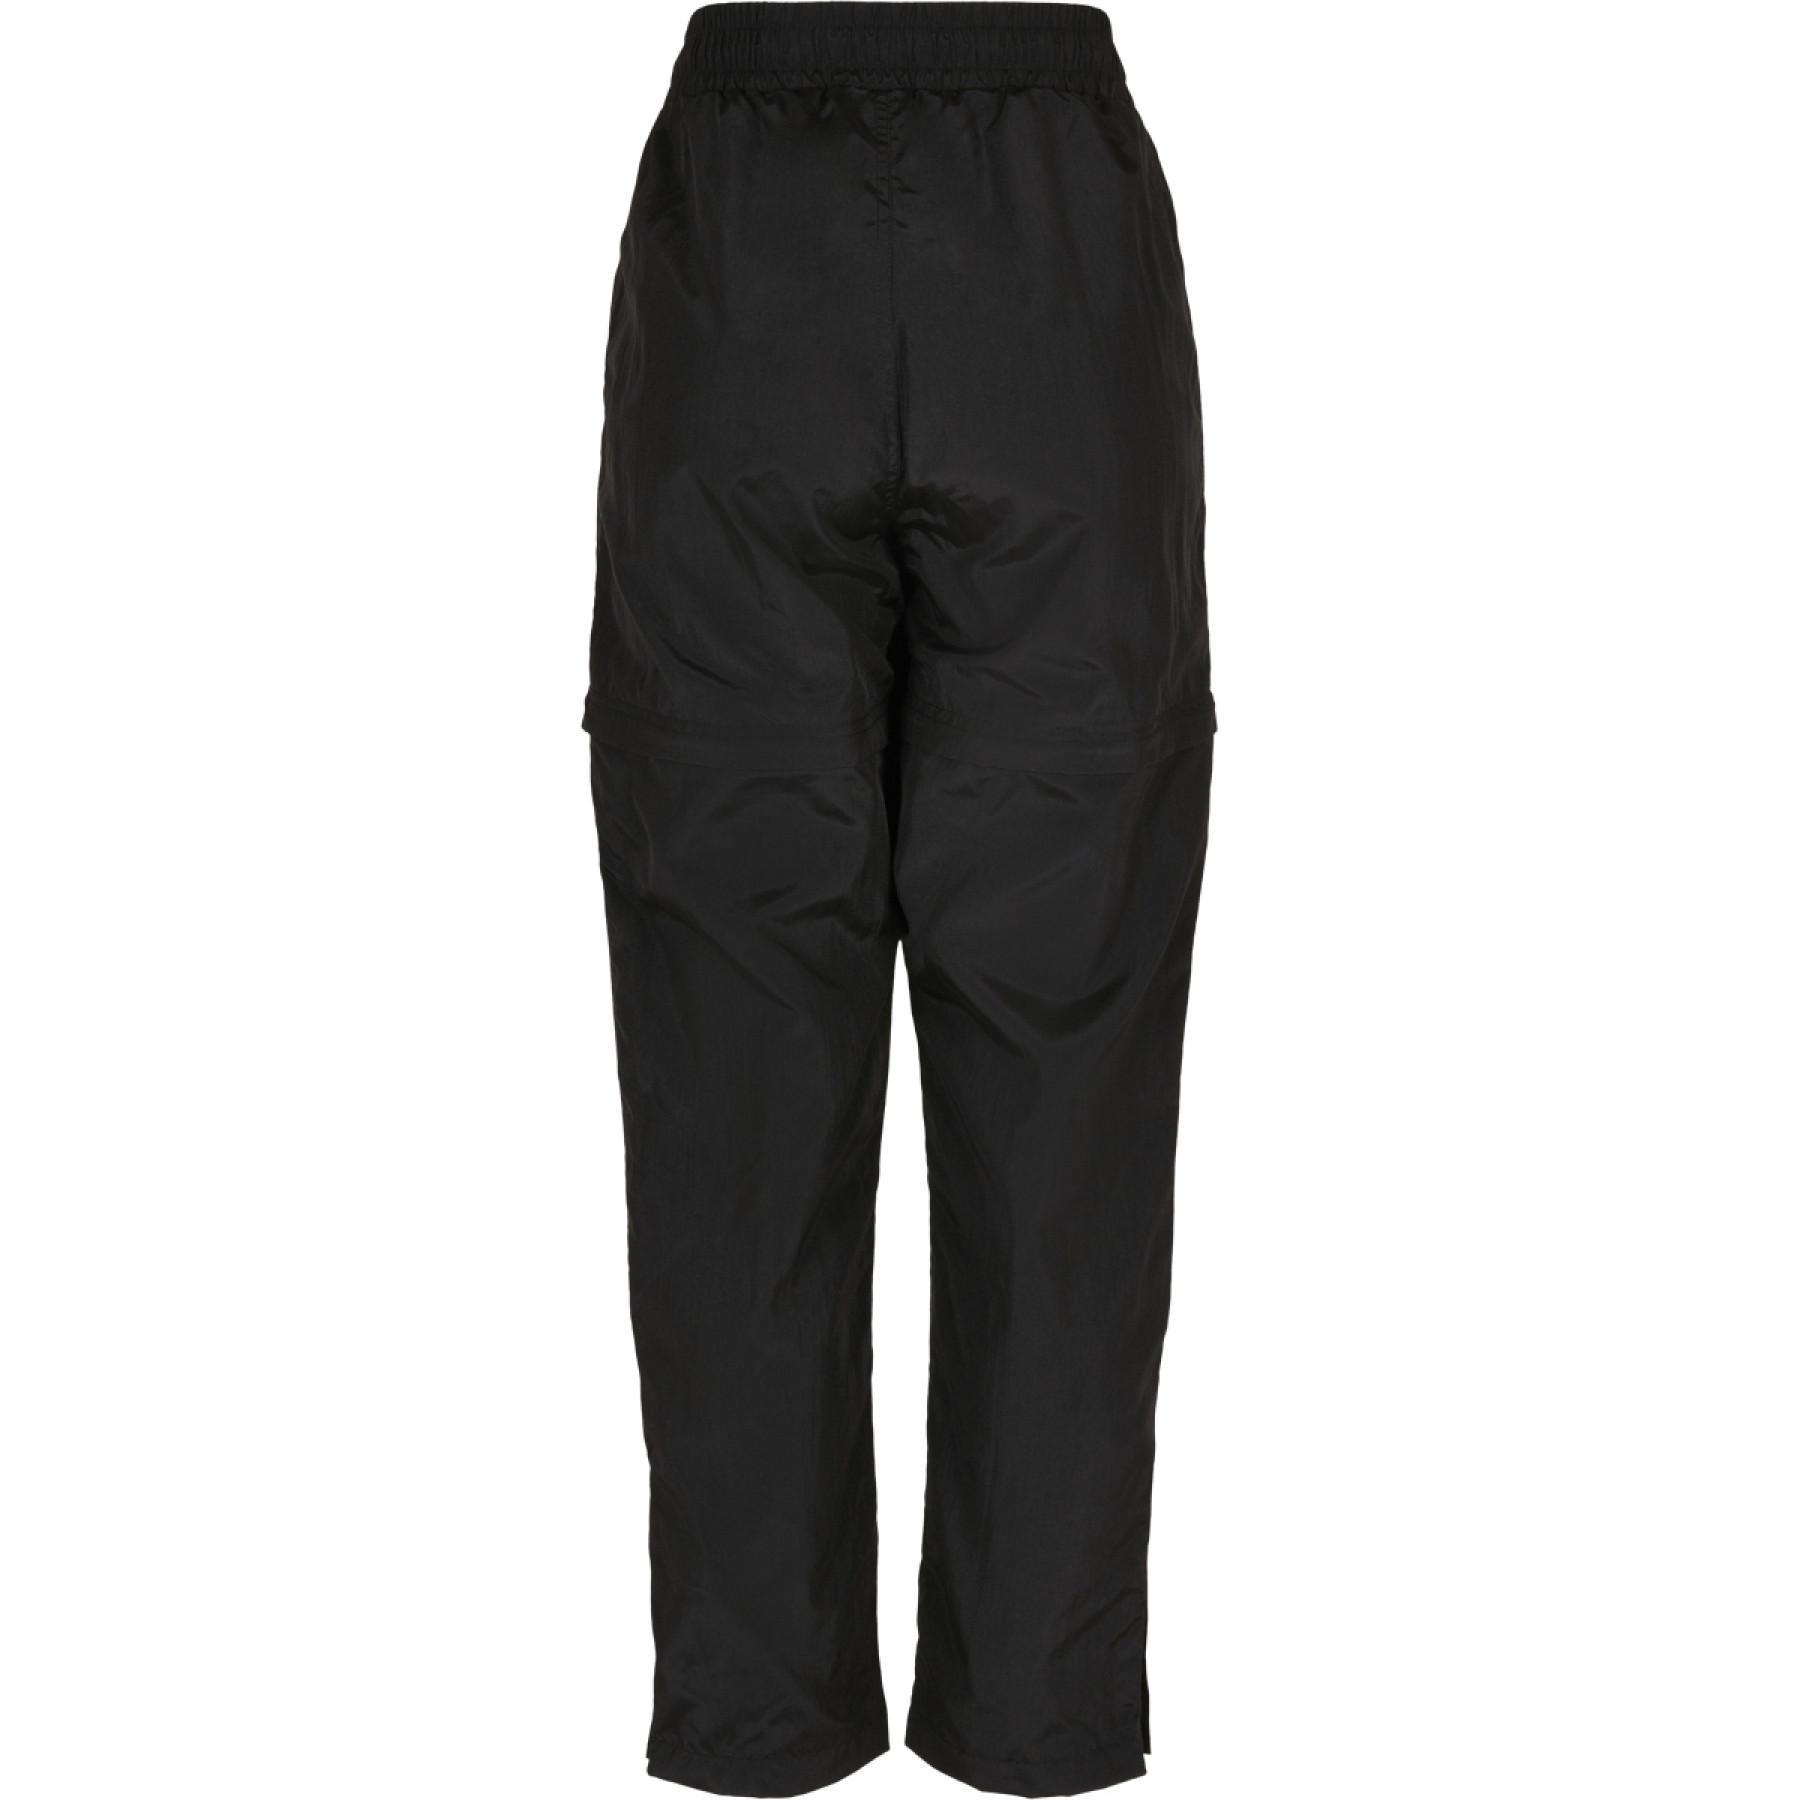 Spodnie damskie Urban Classics shiny crinkle nylon zip